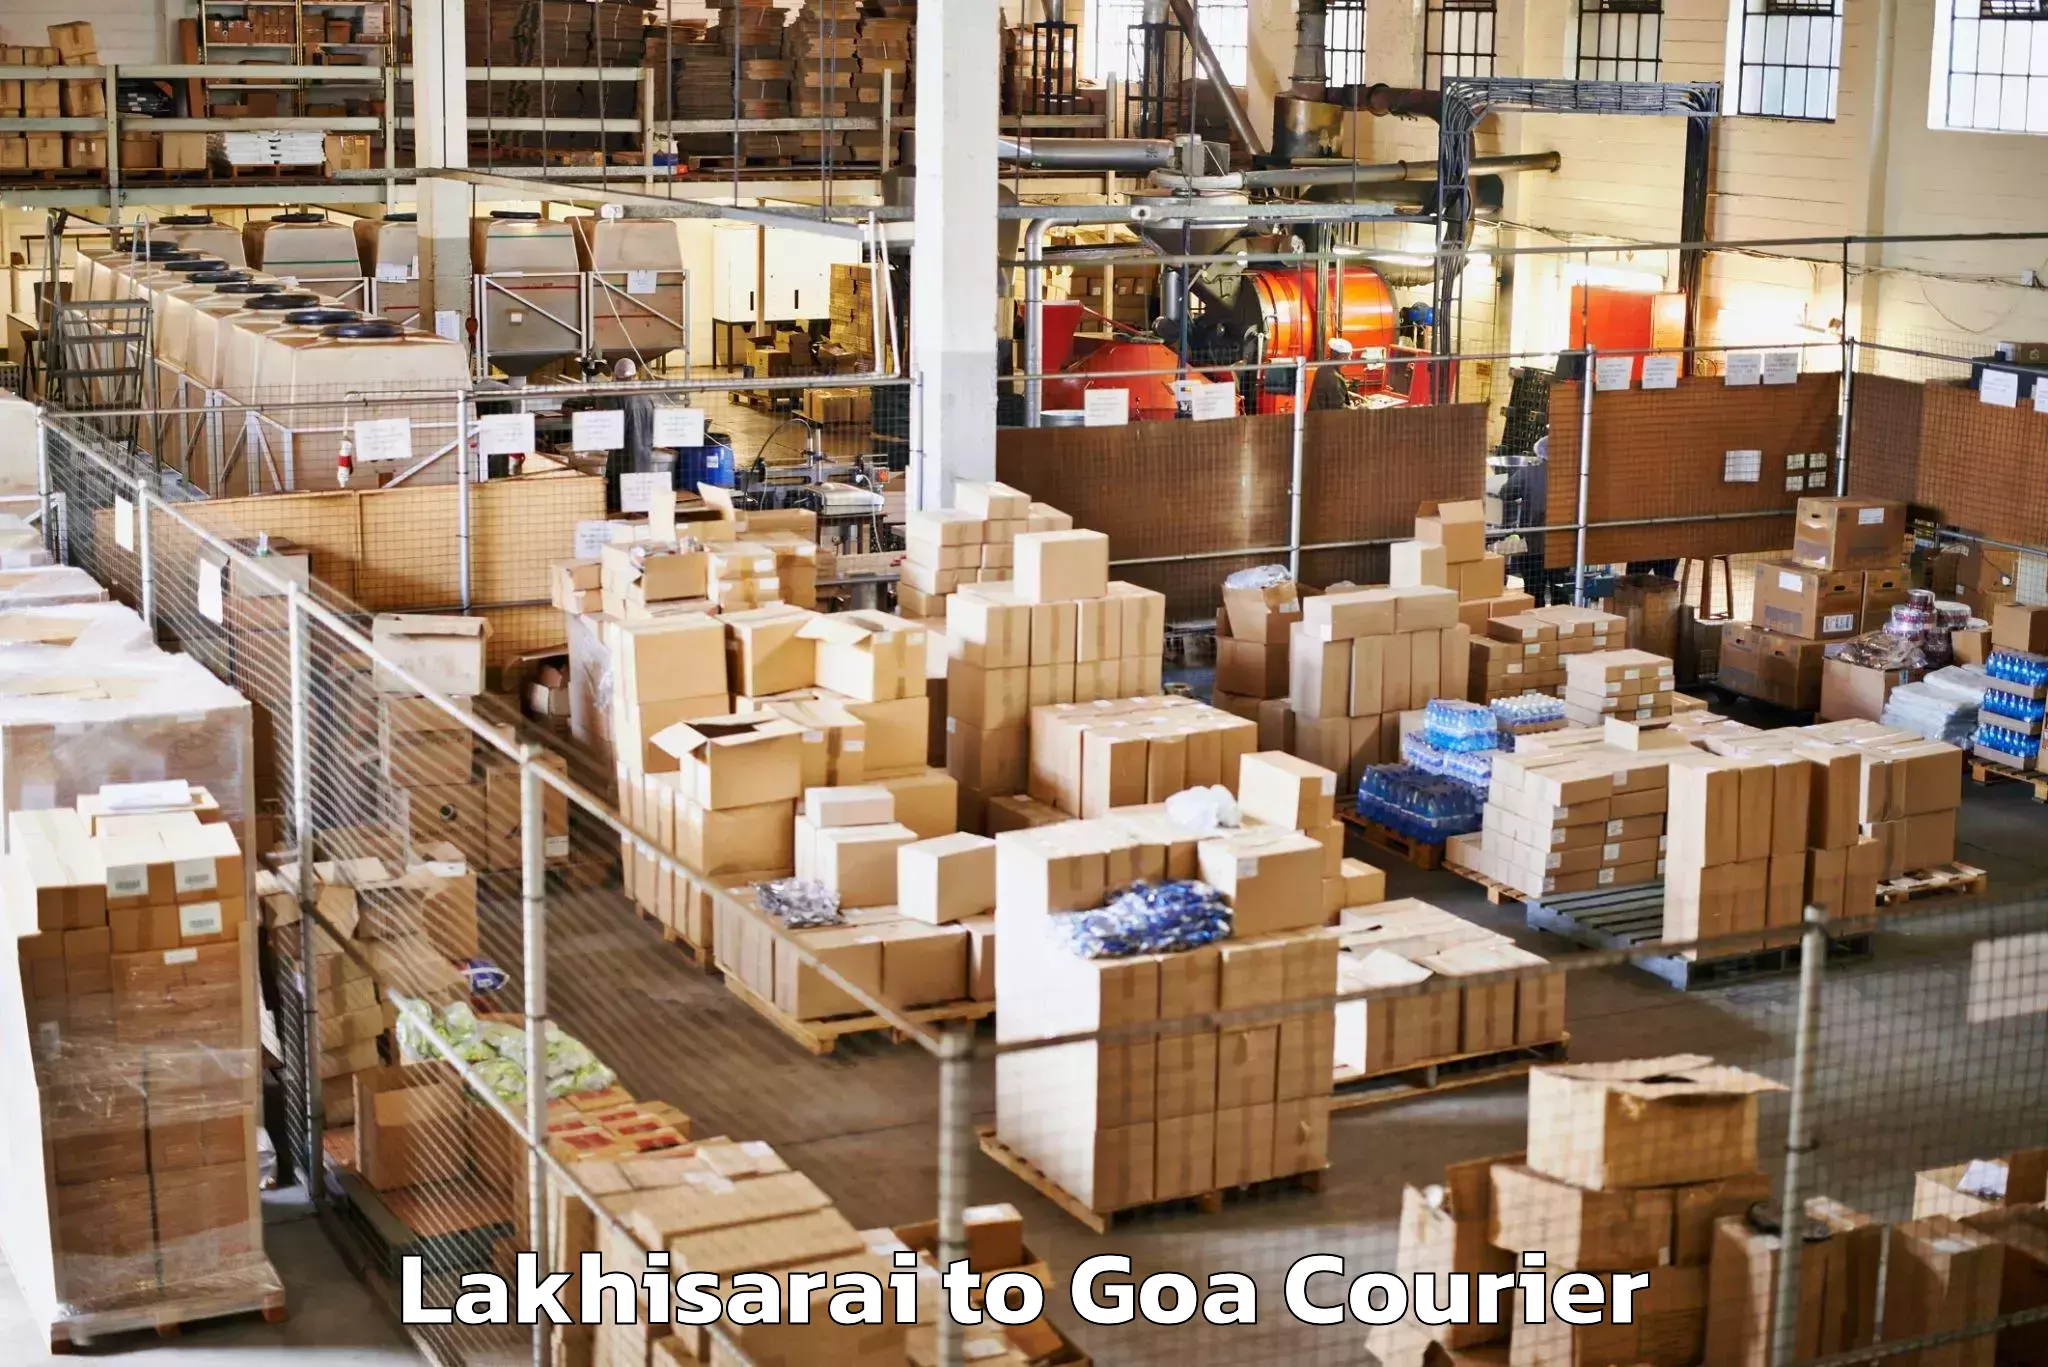 Luggage delivery system Lakhisarai to Ponda